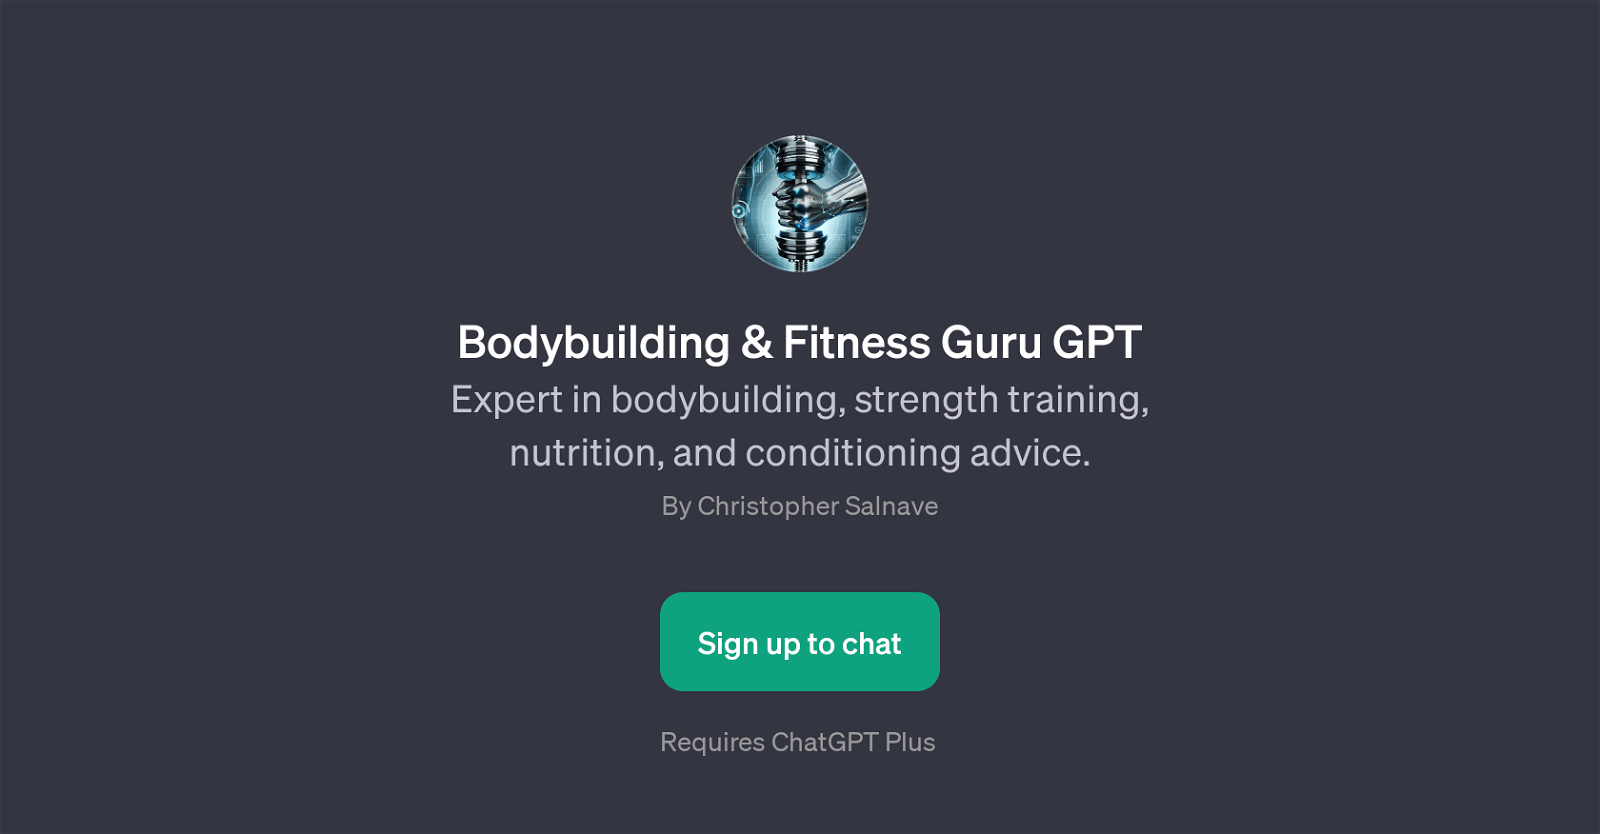 Bodybuilding & Fitness Guru GPT website